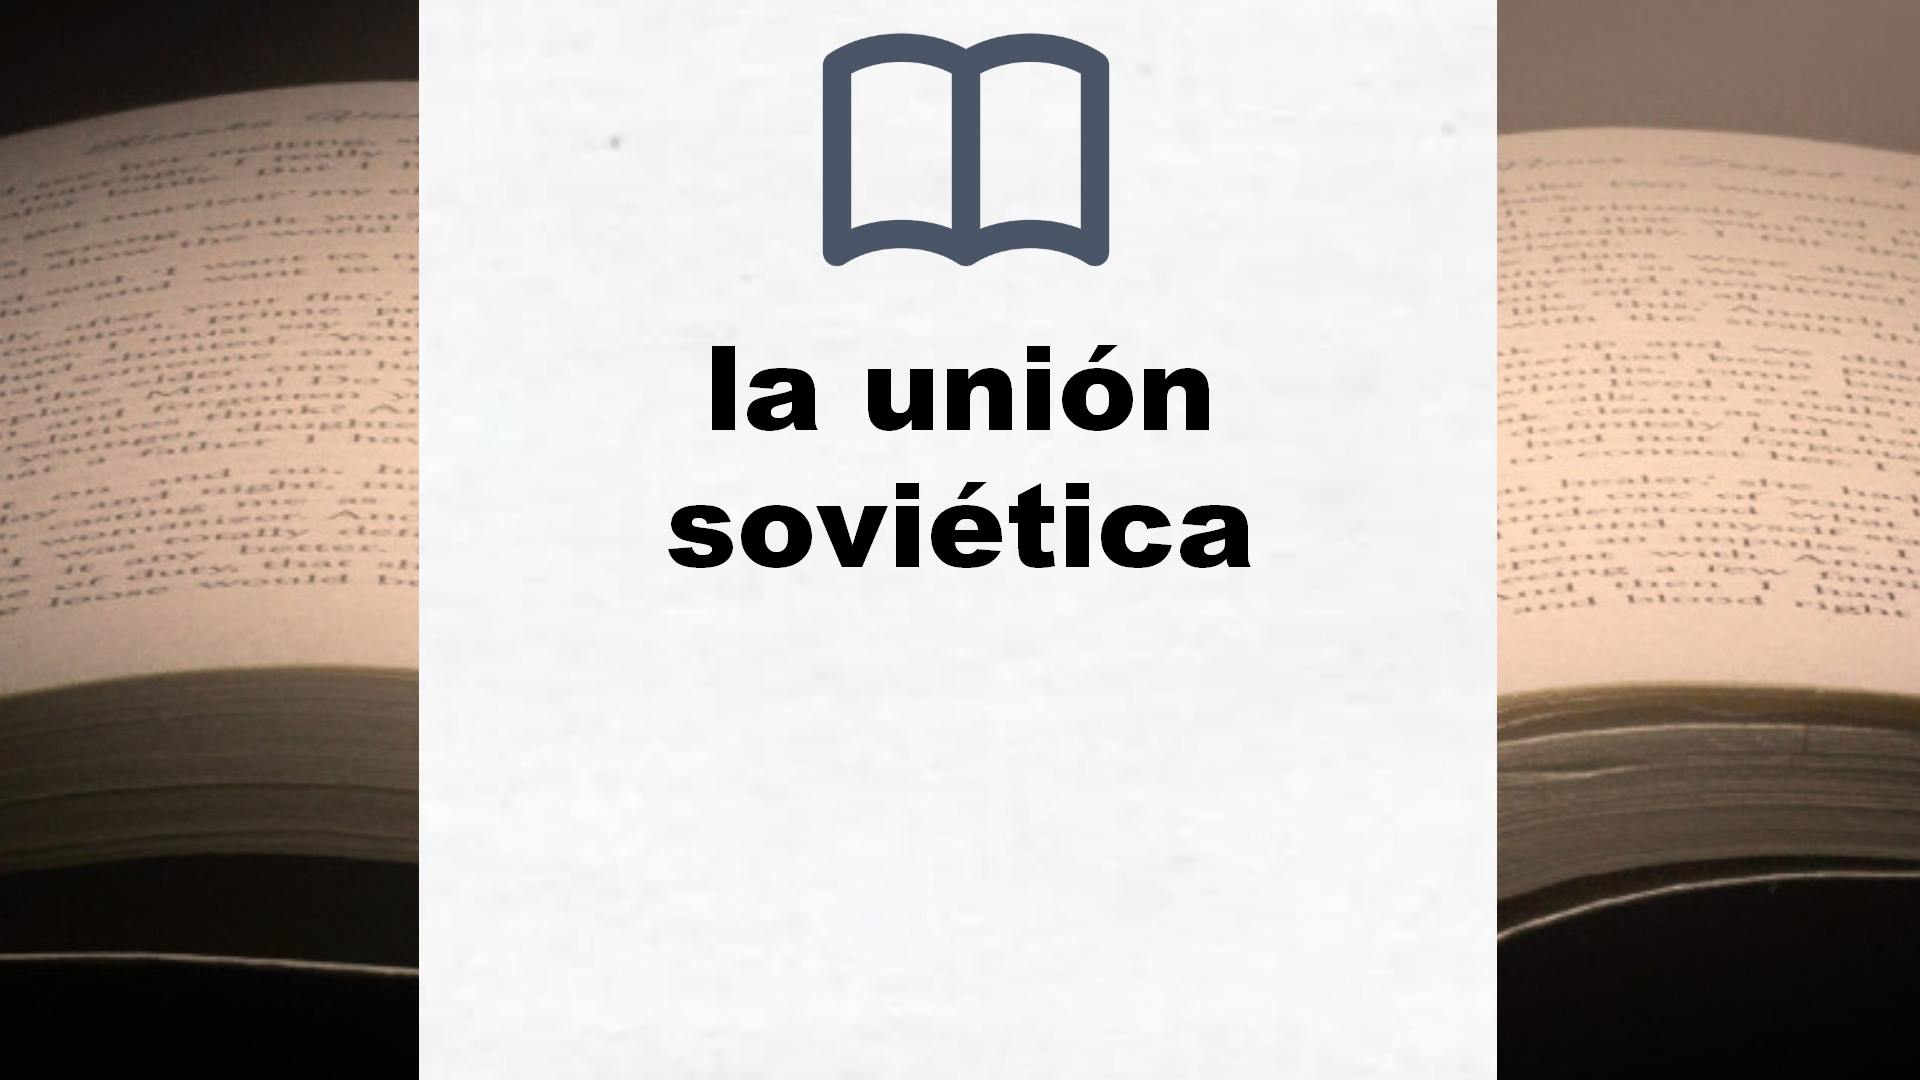 Libros sobre la unión soviética